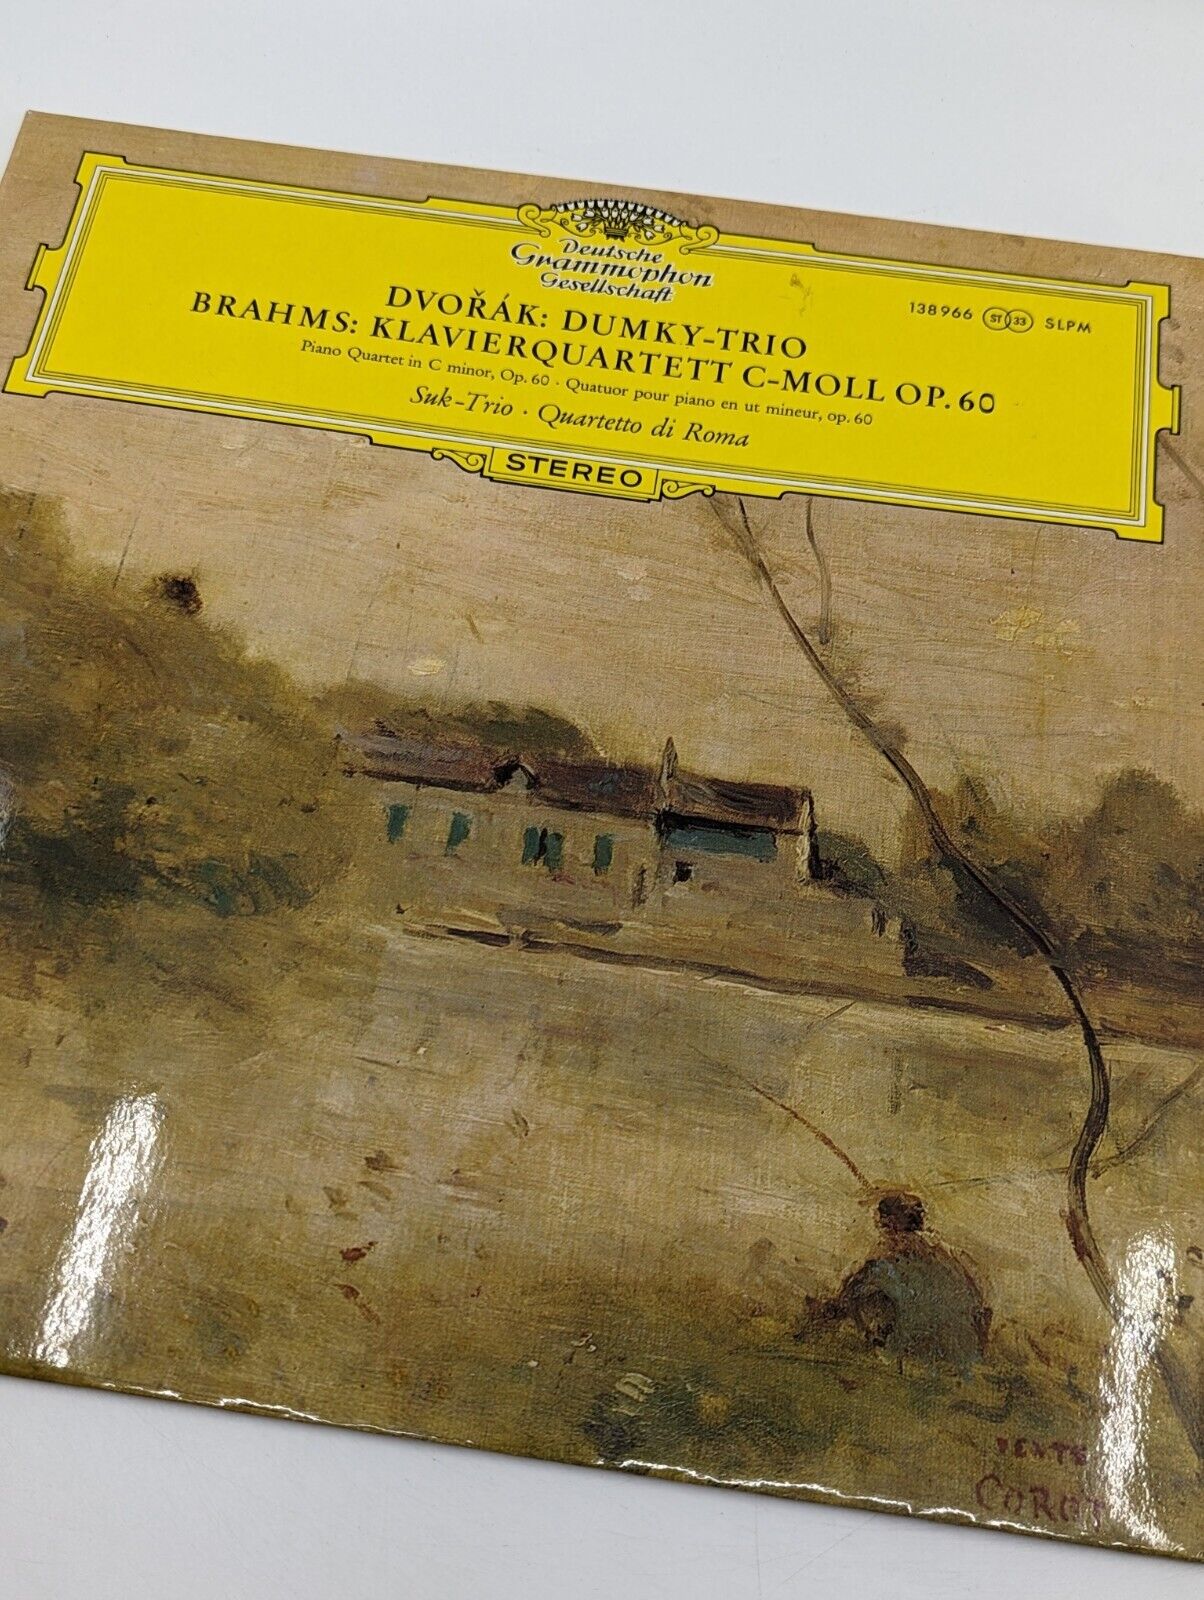 DGG Brahms/Dvorak SUK-TRIO Quartetto di Roma Classical LP NM